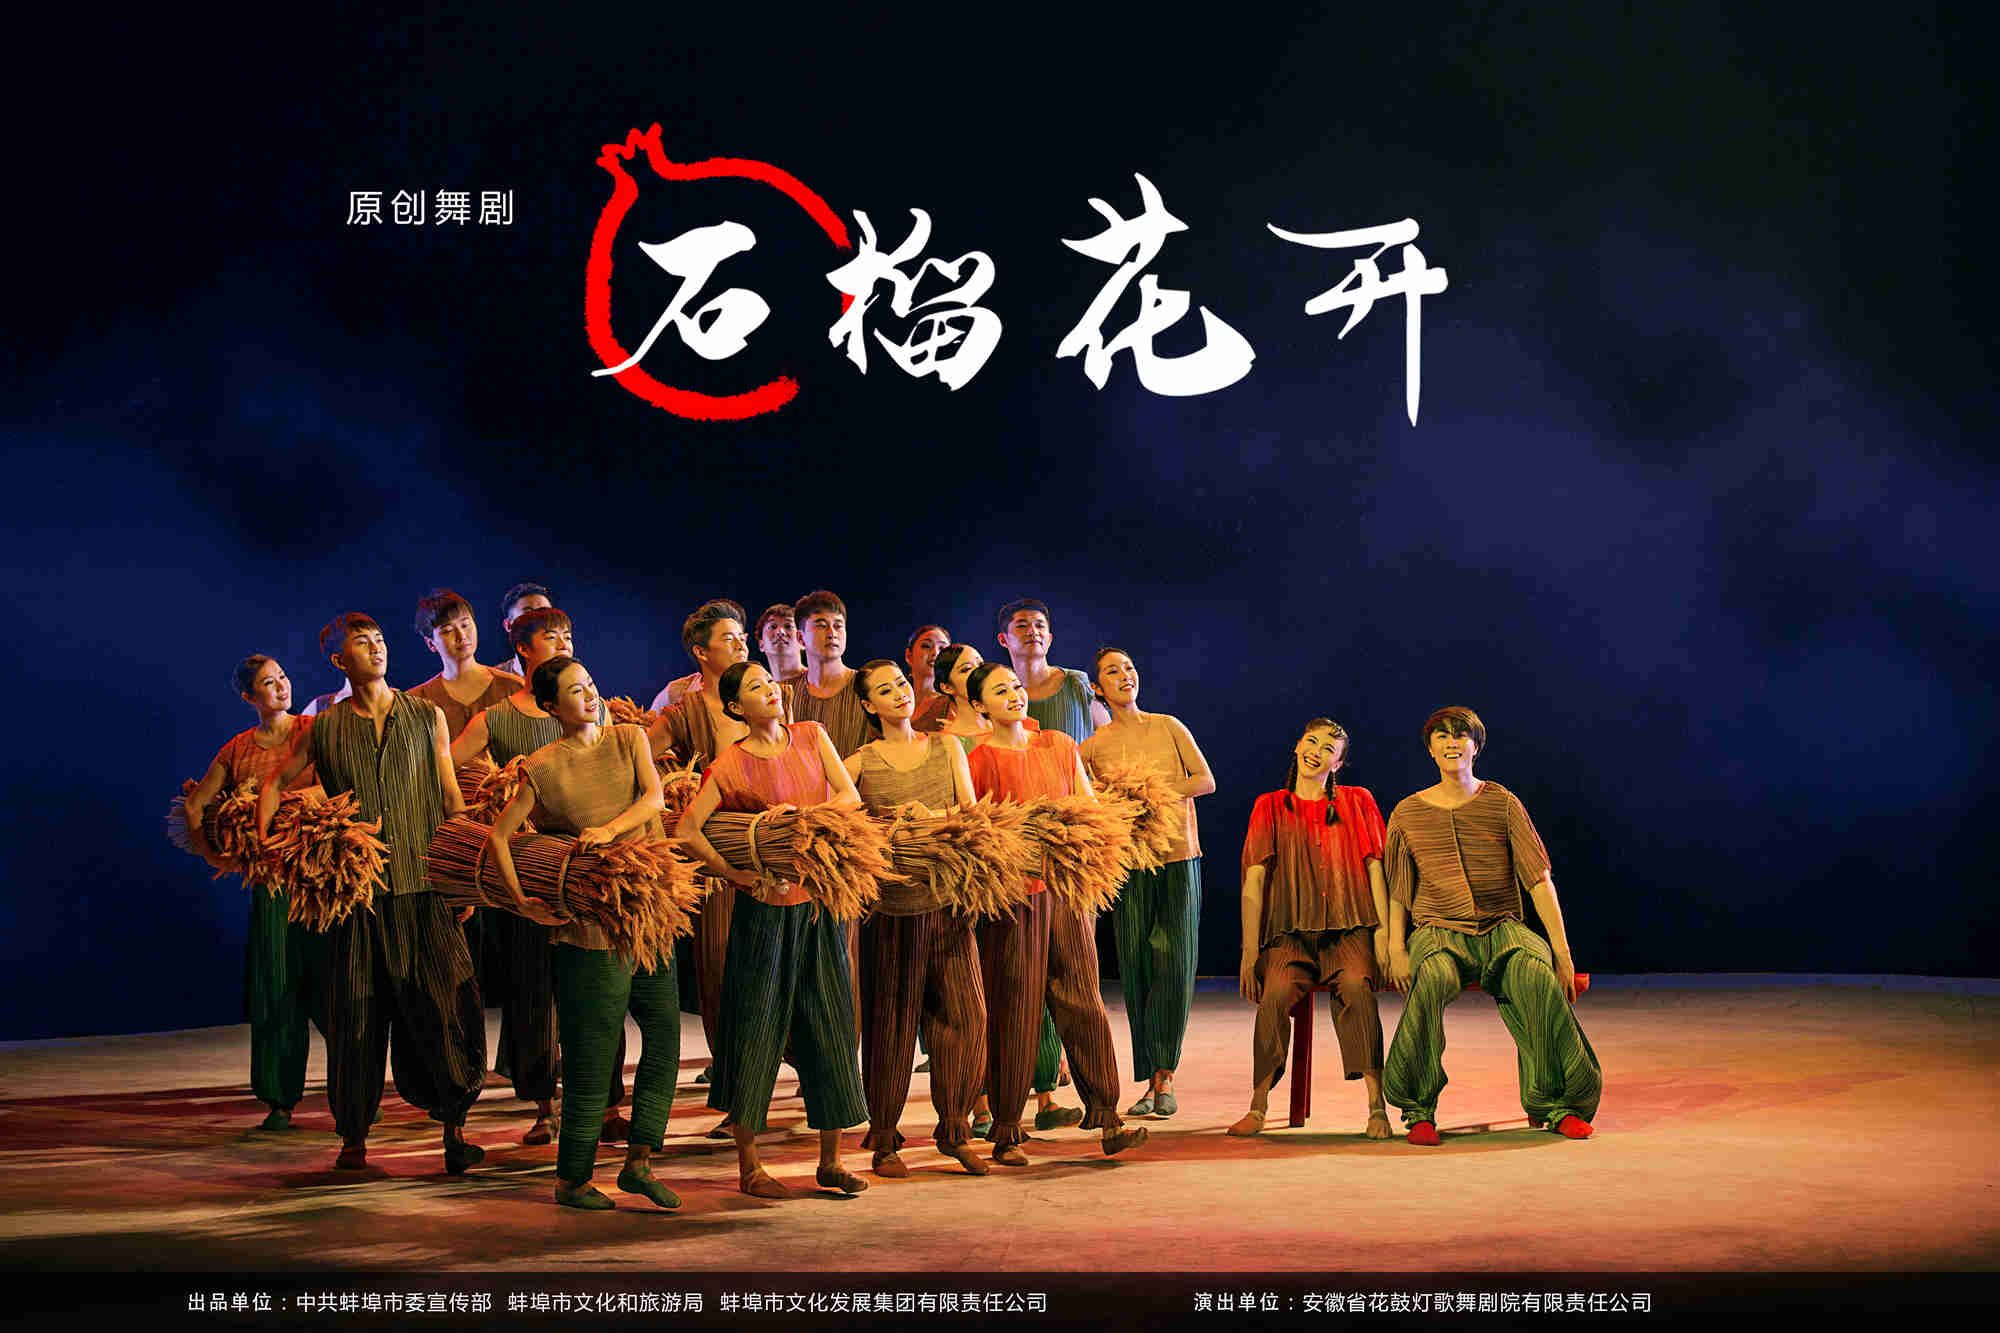 7舞剧《石榴花开》宣传海报--001.jpg